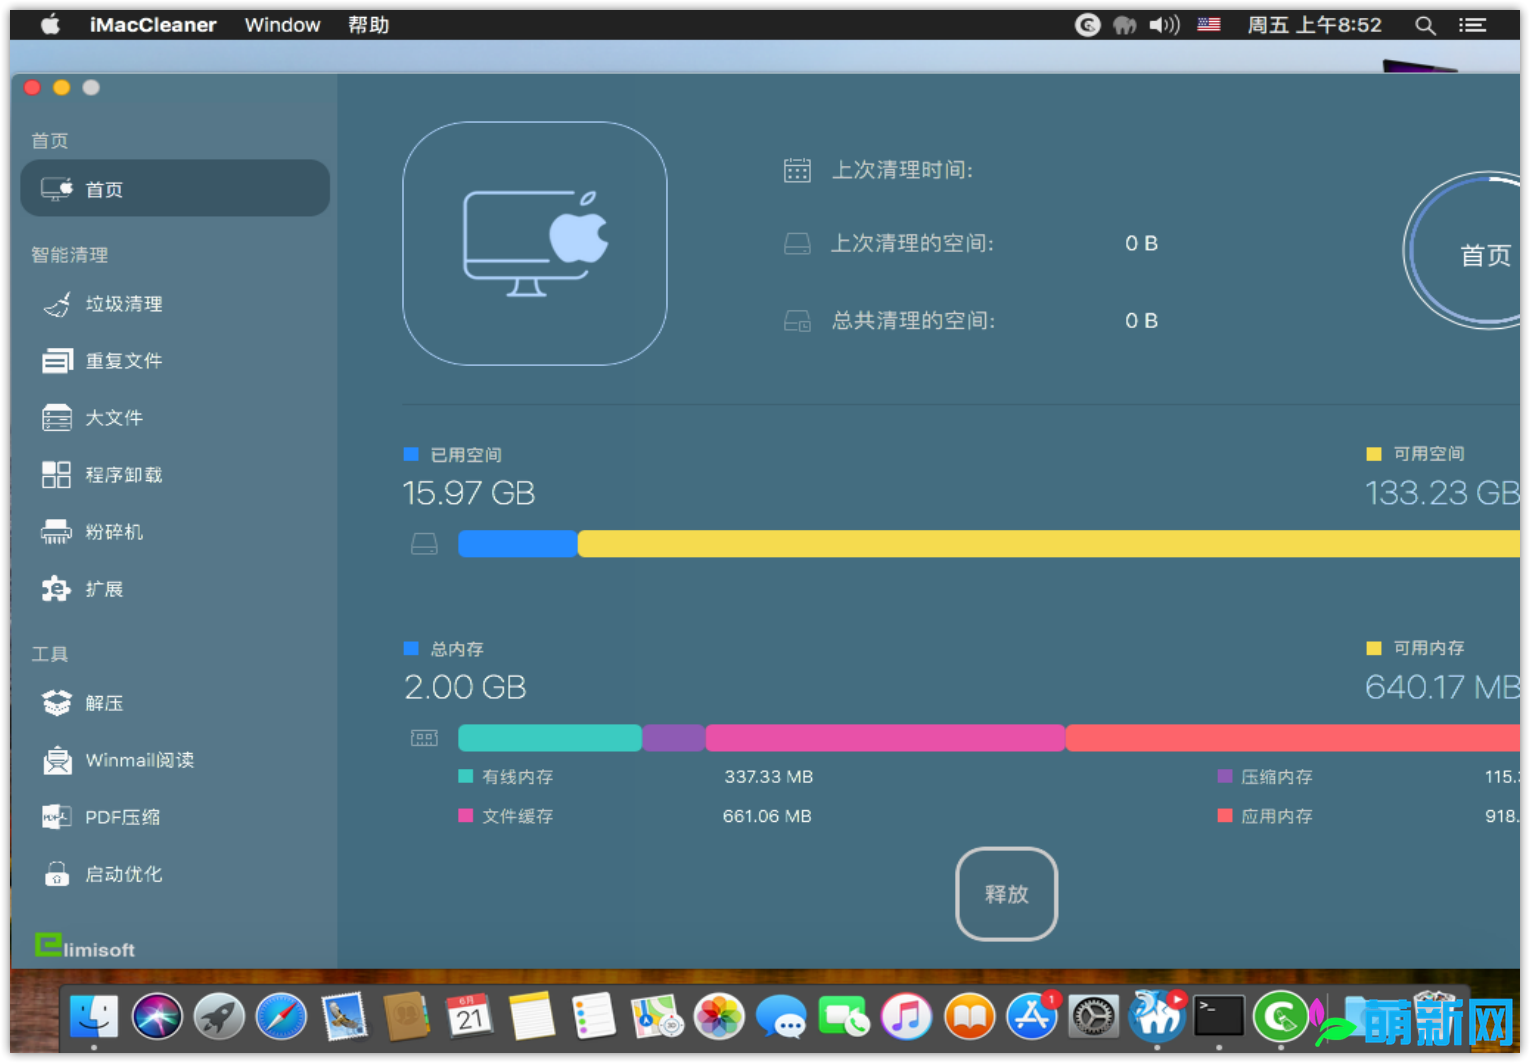 iMac Cleaner 2.8 破解版 完美激活版 Mac系统清理软件 代替CleanMyMac下载插图1